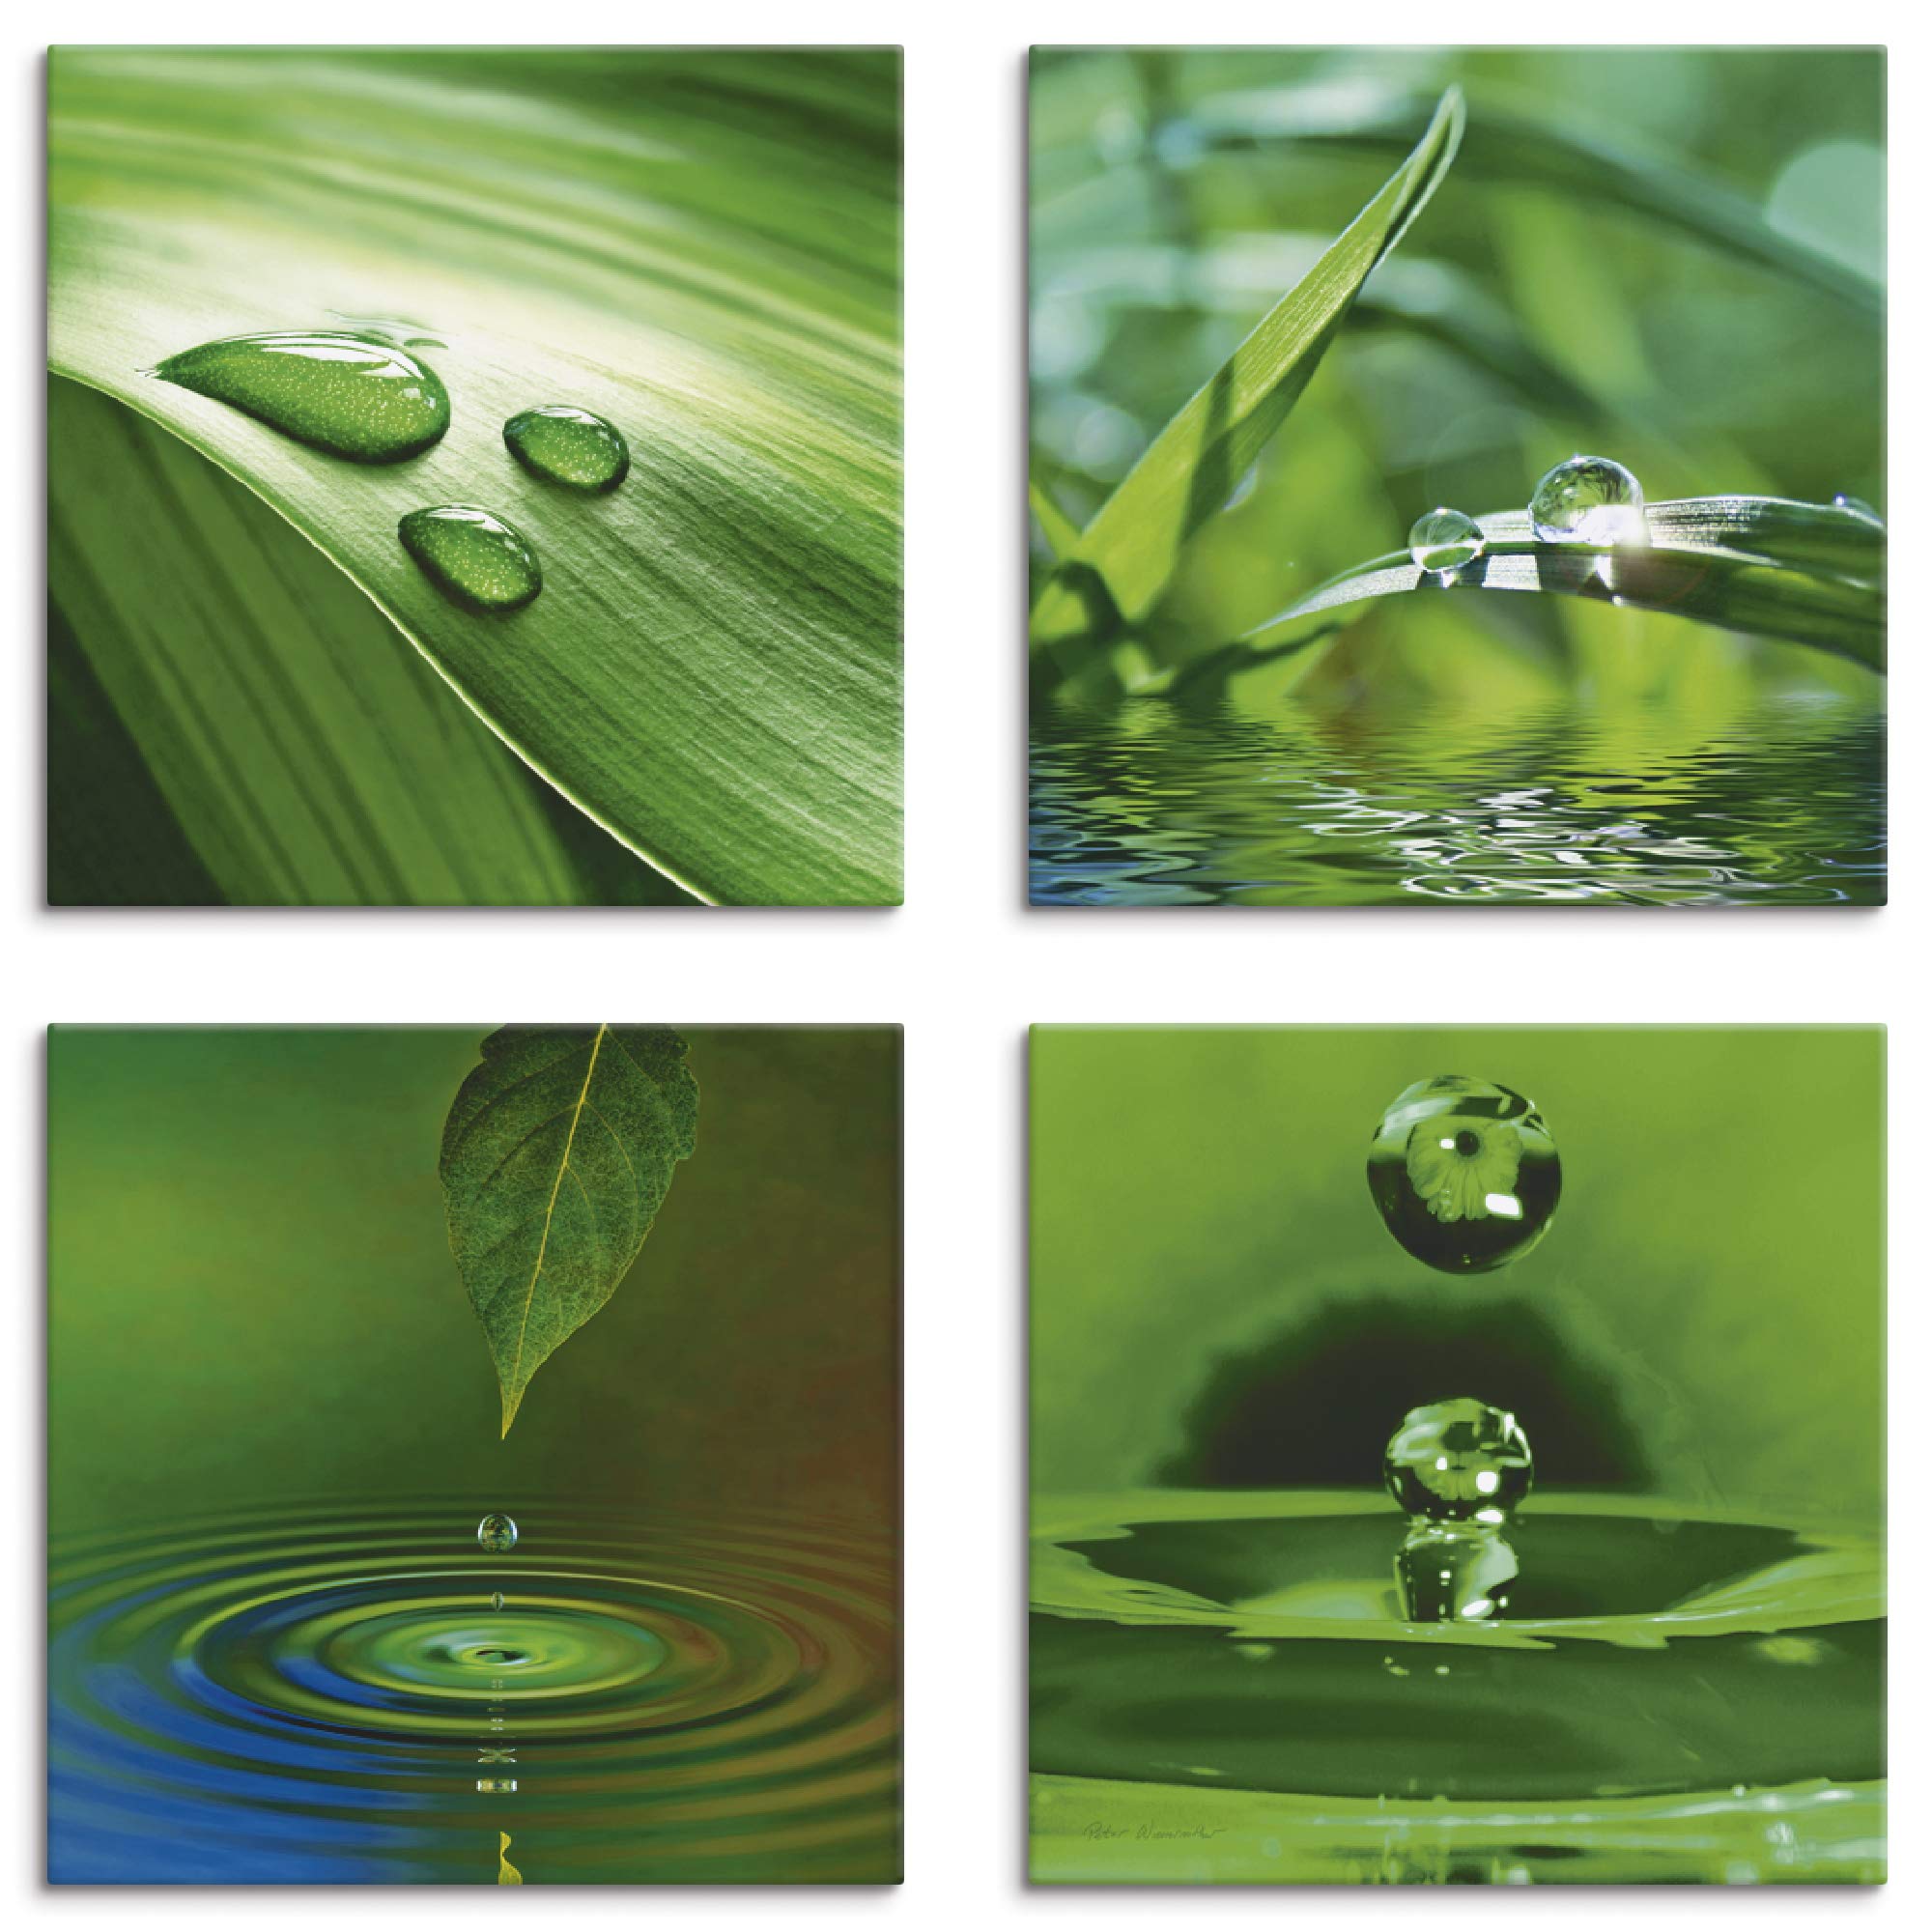 ARTLAND Wellness Bilder Leinwandbilder Set 4tlg. je 20x20 cm Quadratisch Wandbilder Zen Pflanze Gras Wassertropfen K2IQ